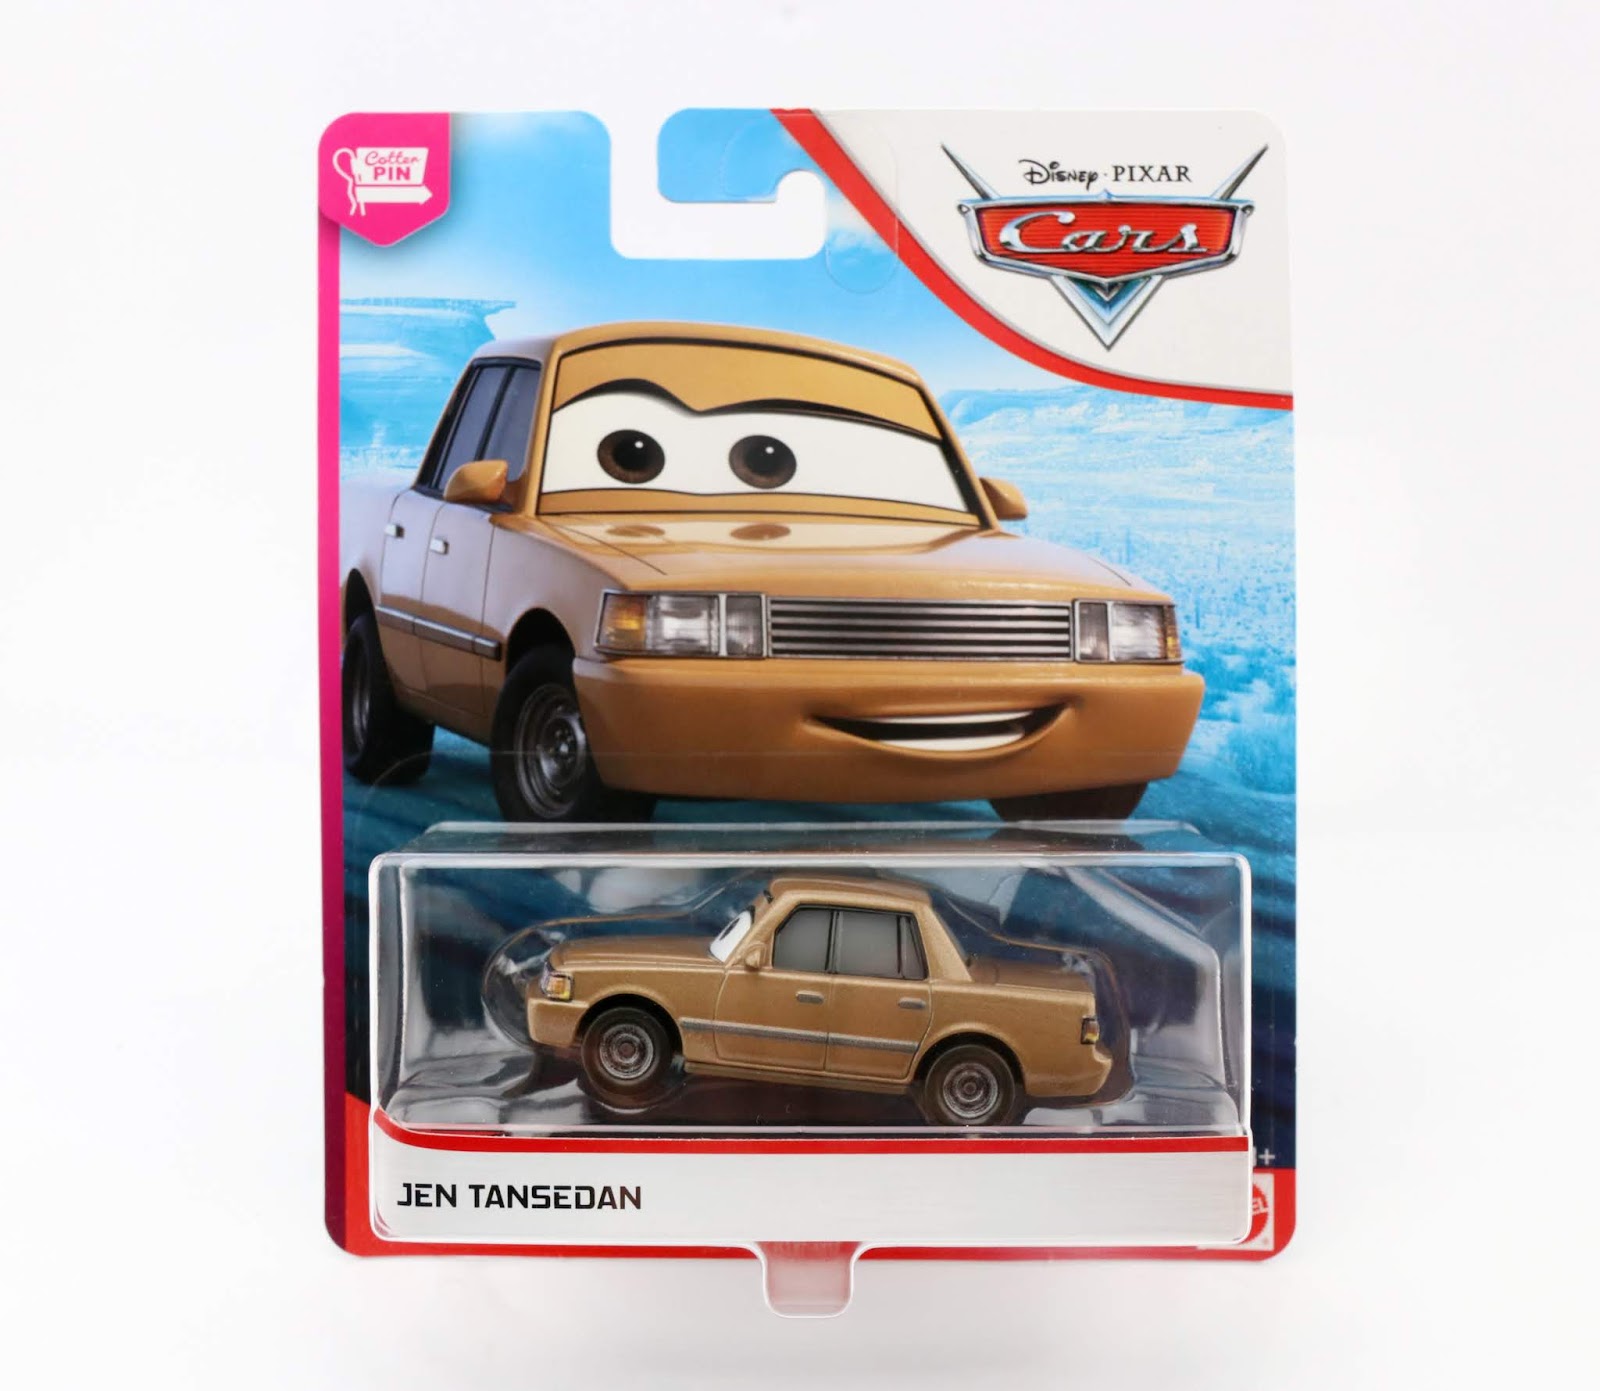 Disney Pixar Cars diecast 1/55th Cars Cotter Pin New Look Jen Tansedan 